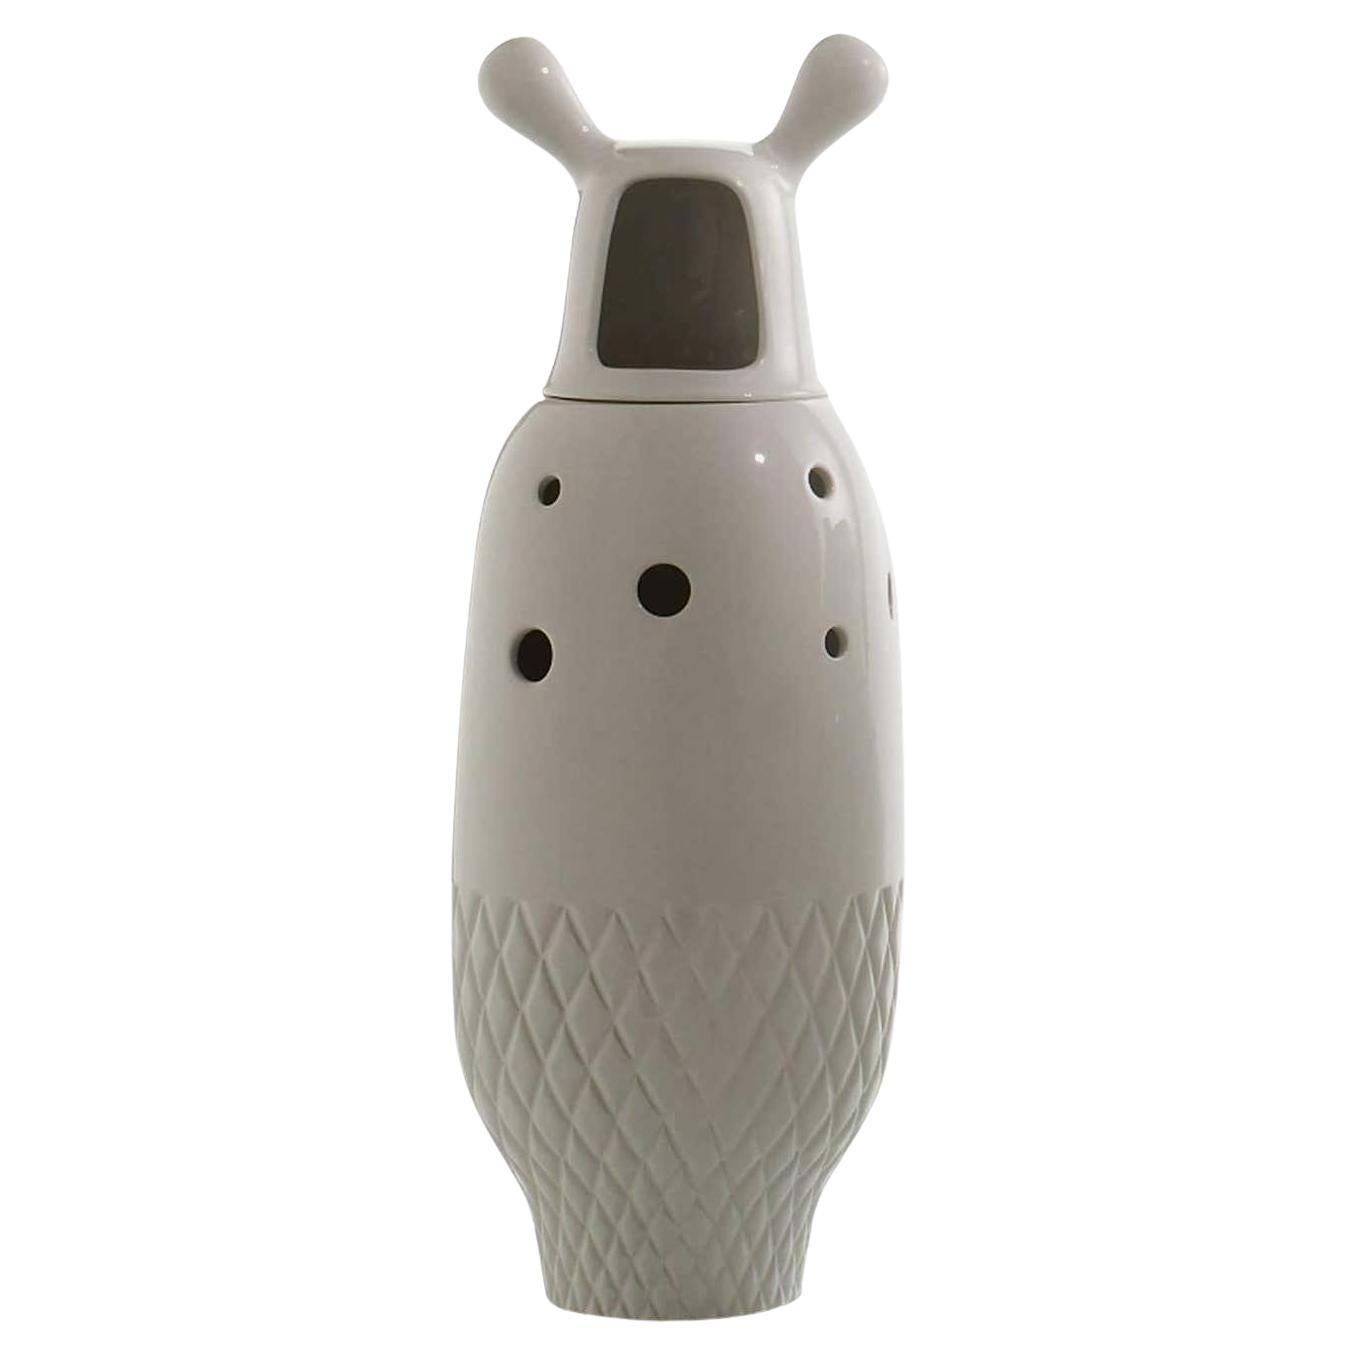 Nº 5 Zeitgenössische Vase aus glasierter Keramik, weiß, Showtime Kollektion von J. Hayon